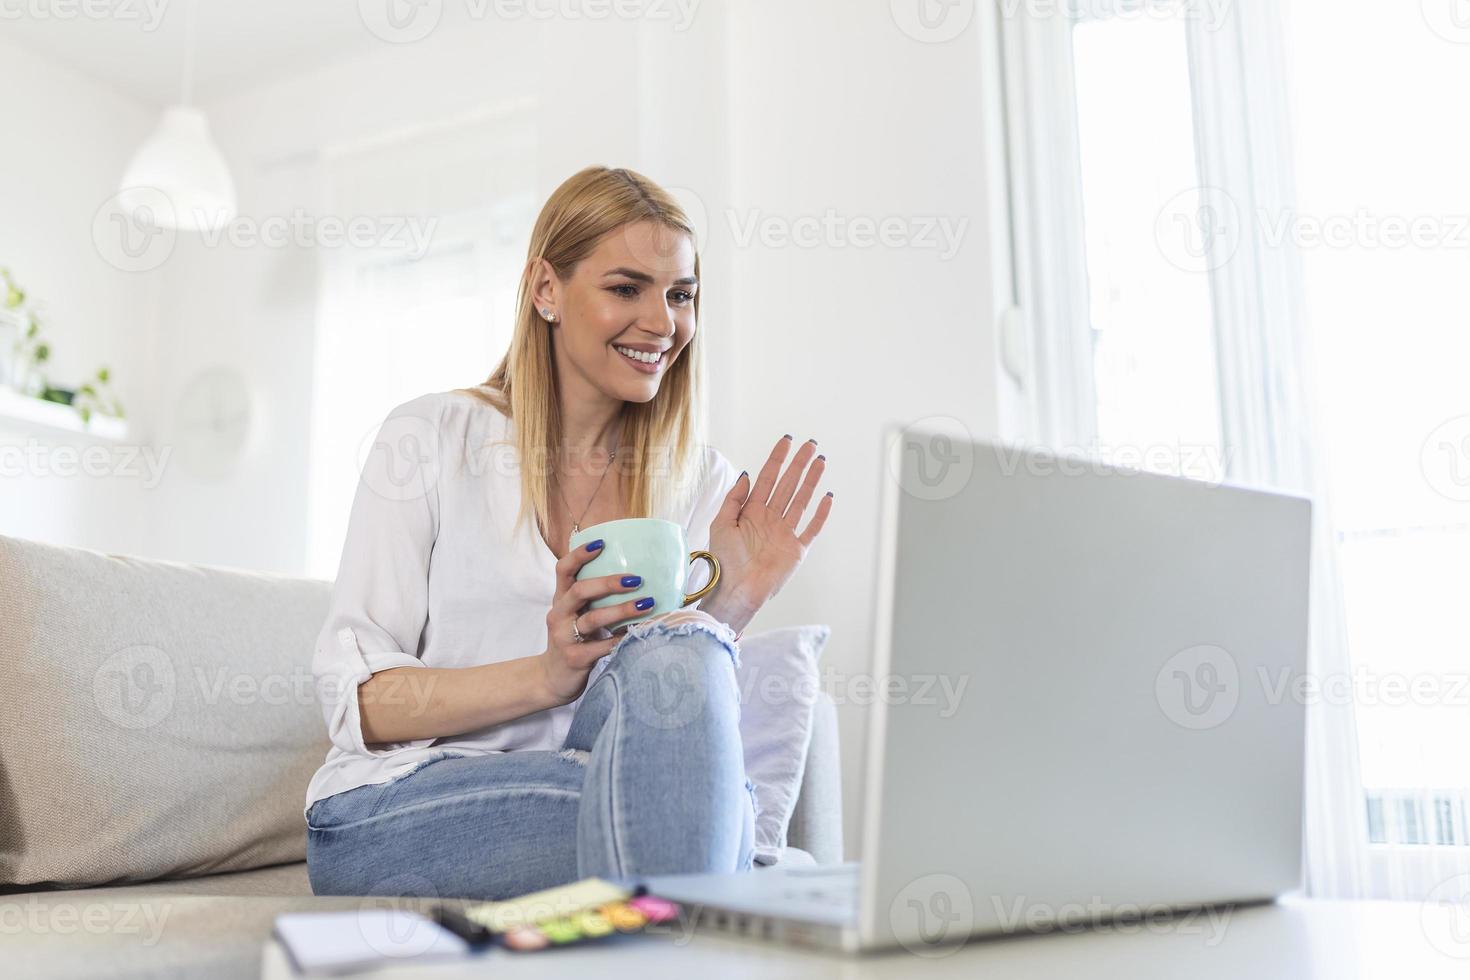 jeune femme agitant devant un ordinateur portable et parlant à ses amis par appel vidéo, étudiante parlant par vidéoconférence, tutorat d'enseignante par webcam, formation en ligne, concept d'e-coaching photo